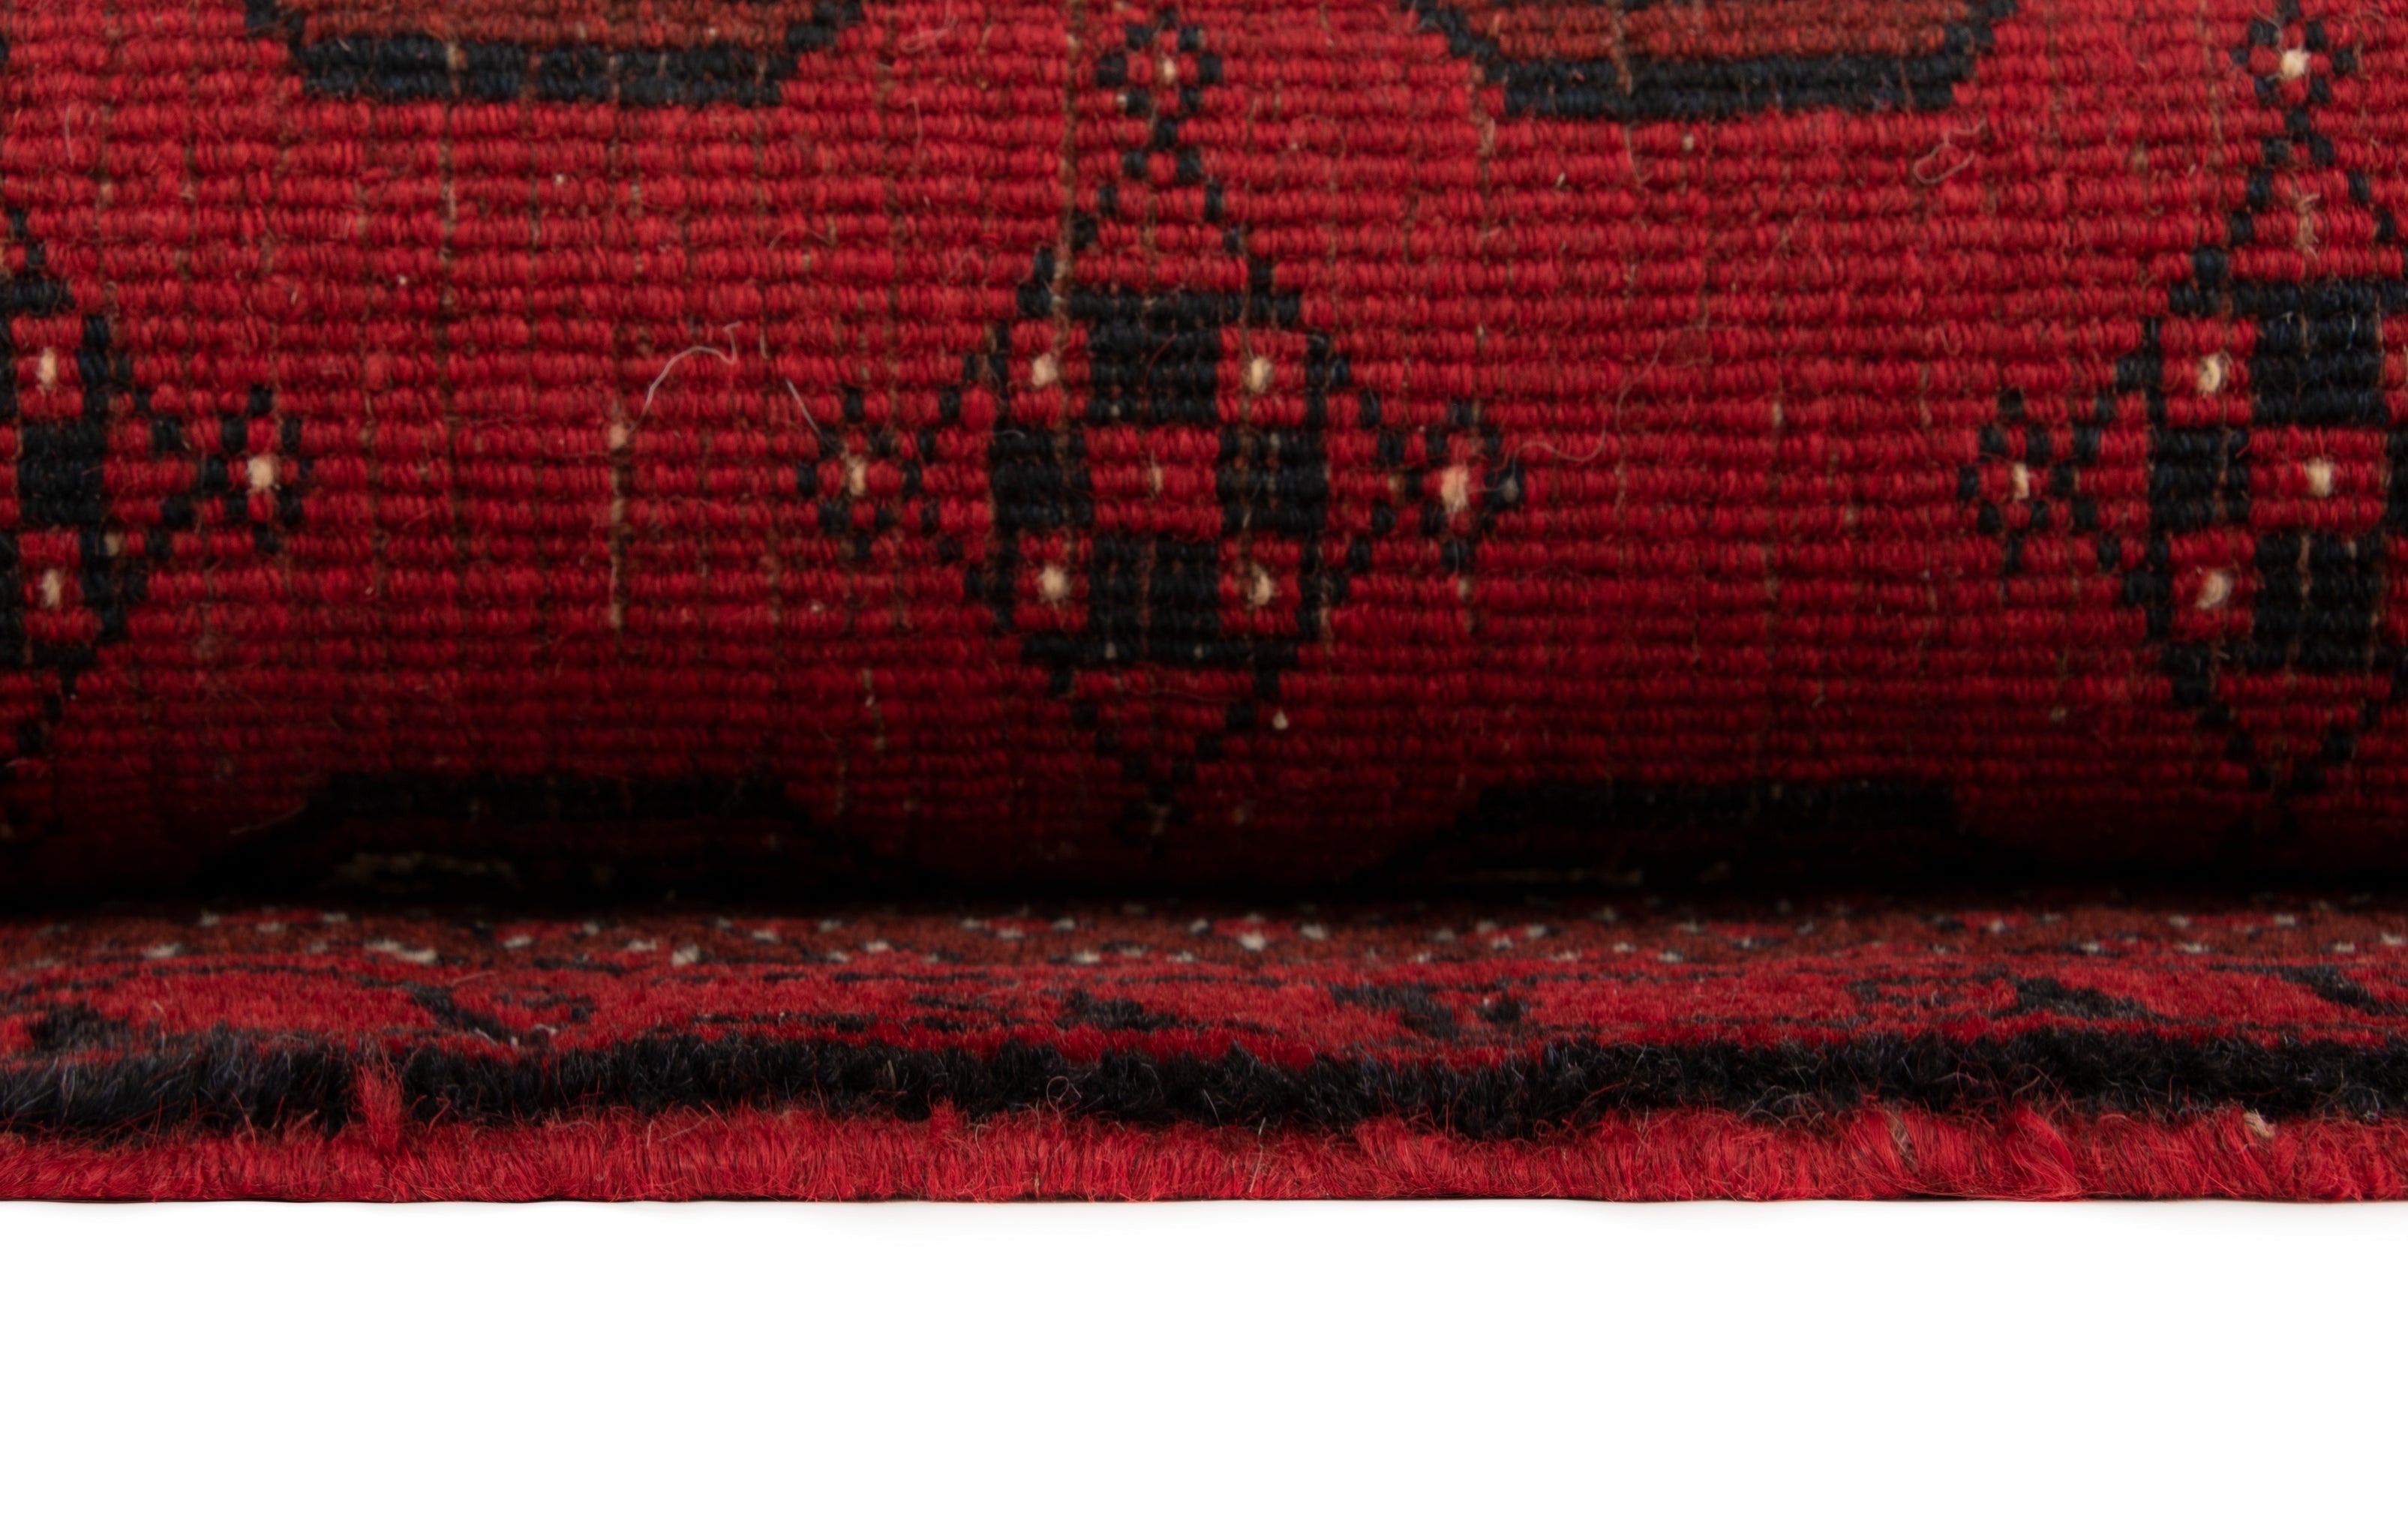 104x179 Afghan in Rot präsentiert im Onlineshop von KAQTU Design AG. Teppich ist von Vidal